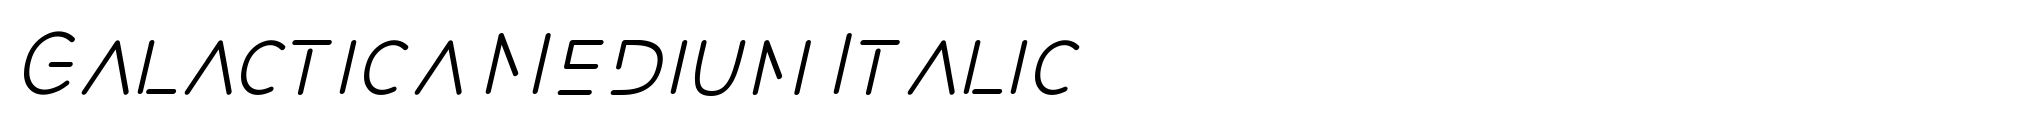 Galactica Medium Italic image